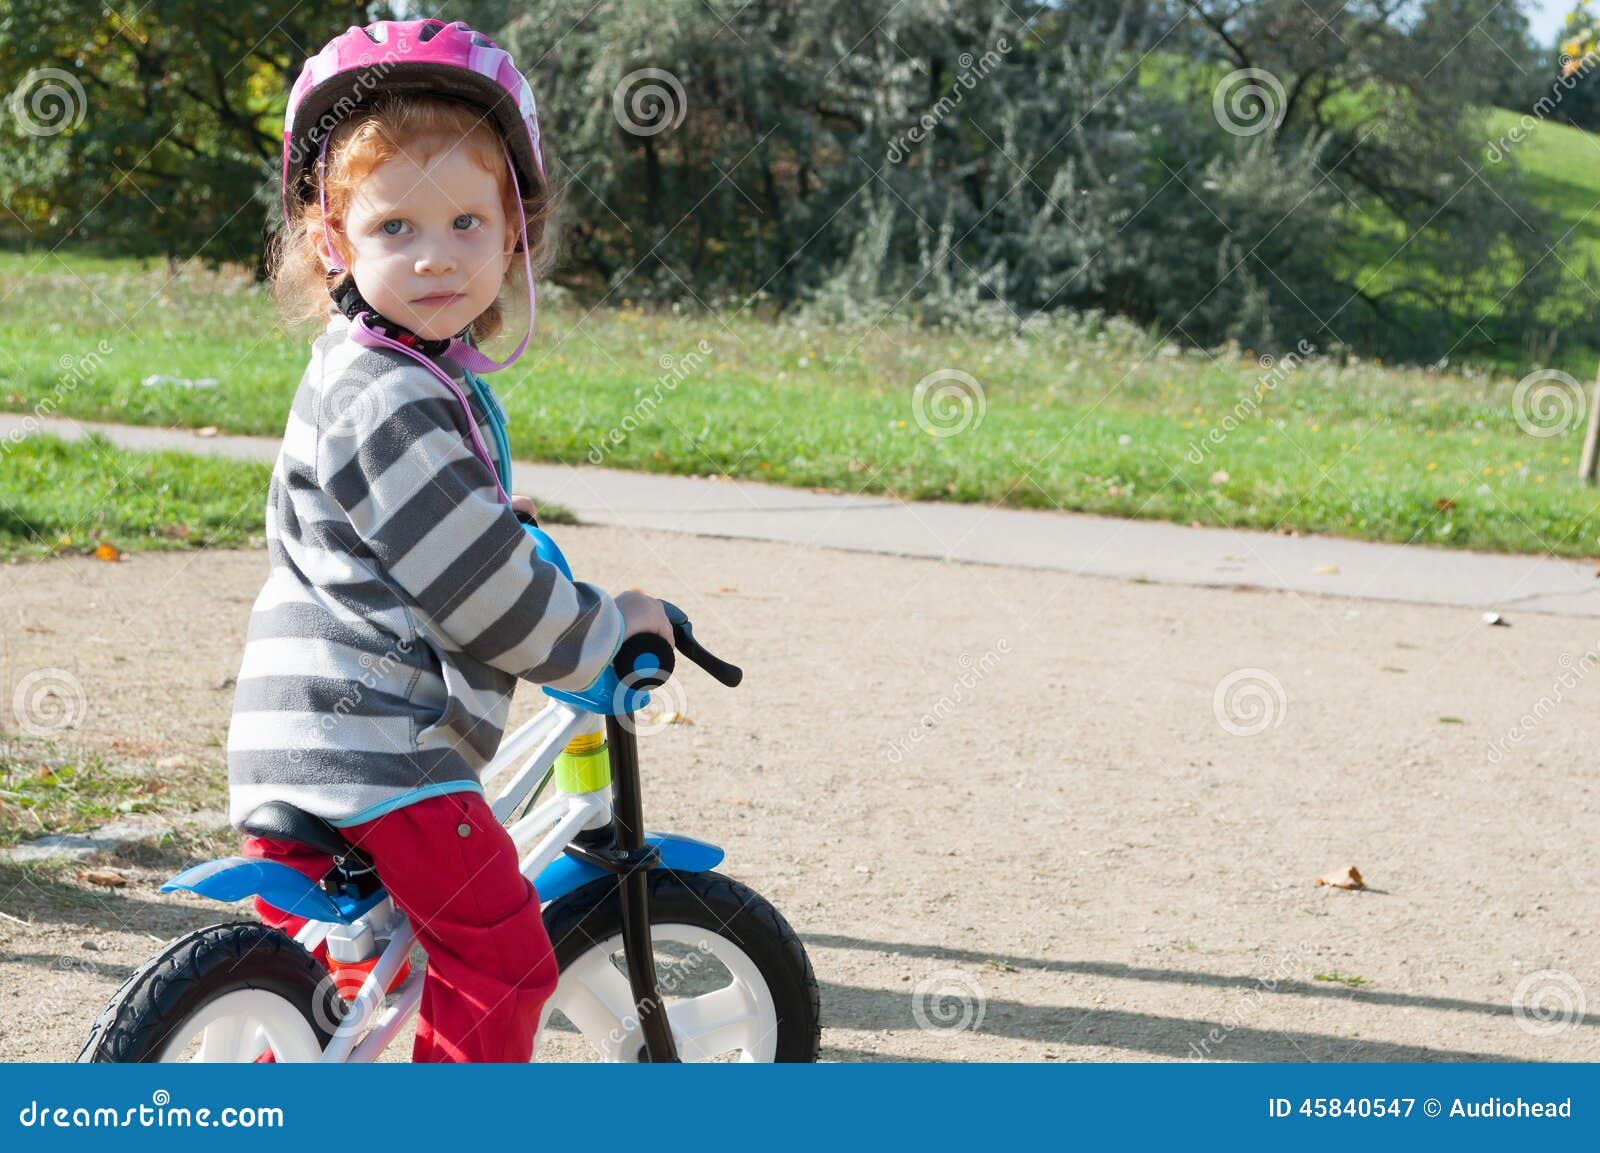 Criança com bicicleta. Menina da criança com o capacete de segurança na bicicleta no parque do outono